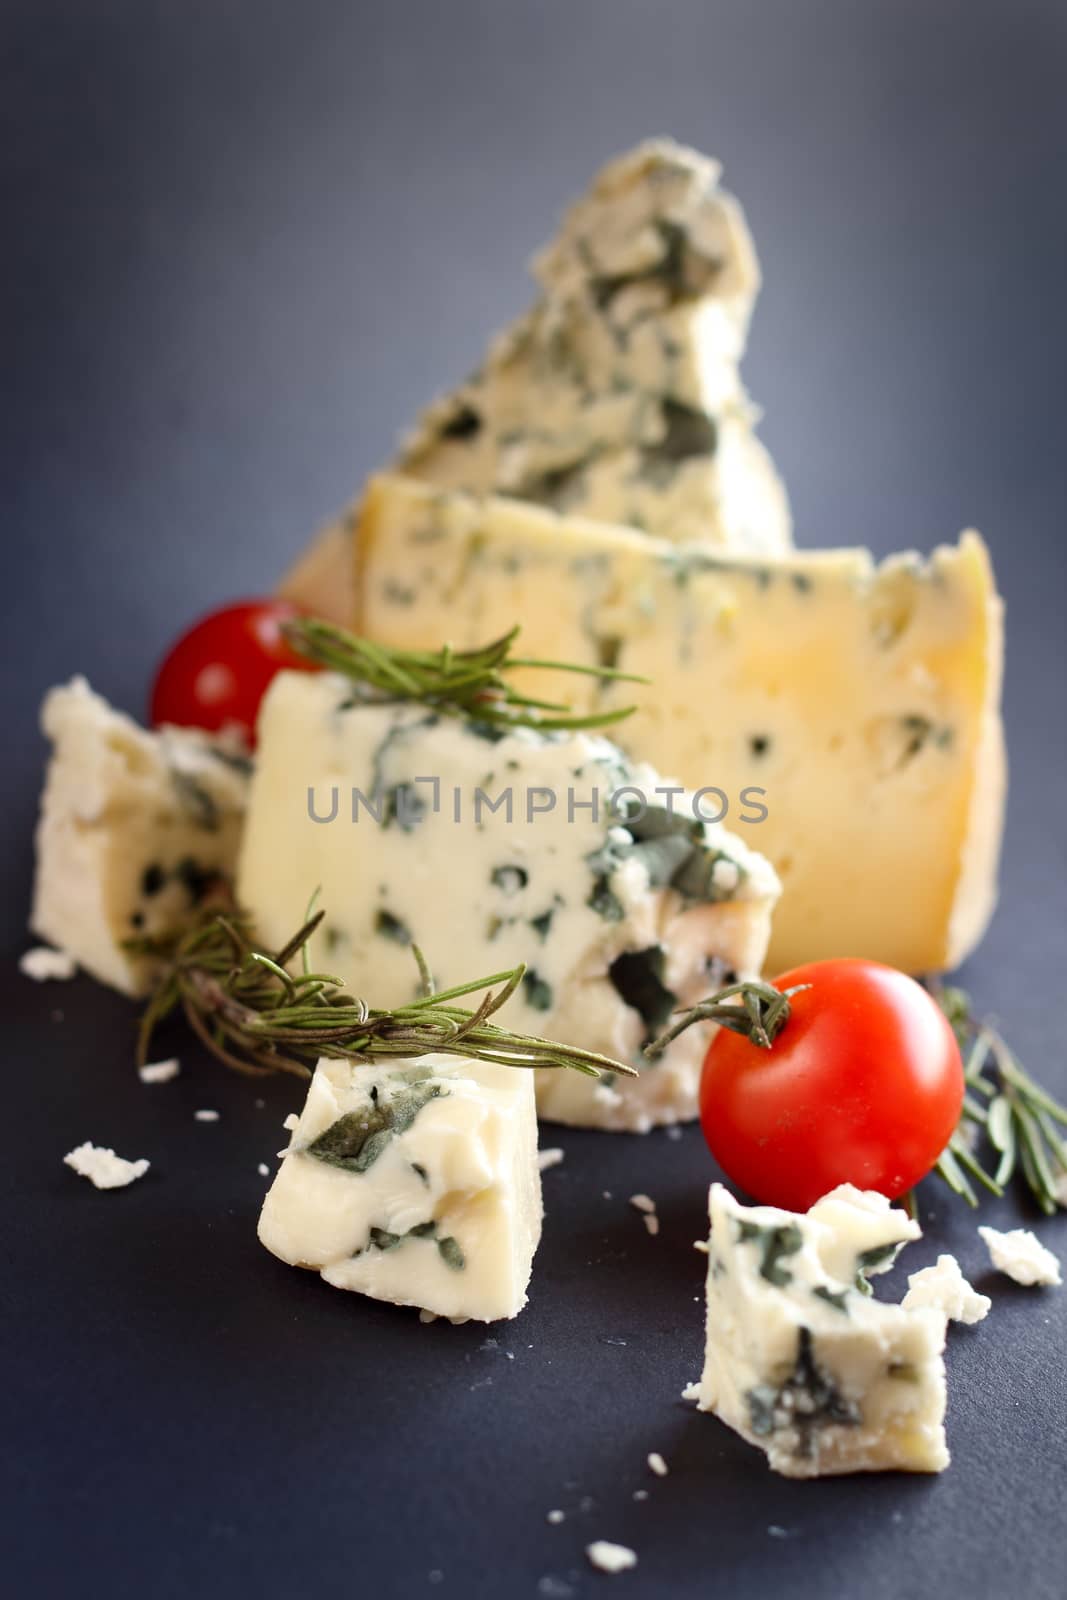 Roquefort cheese composition on dark background